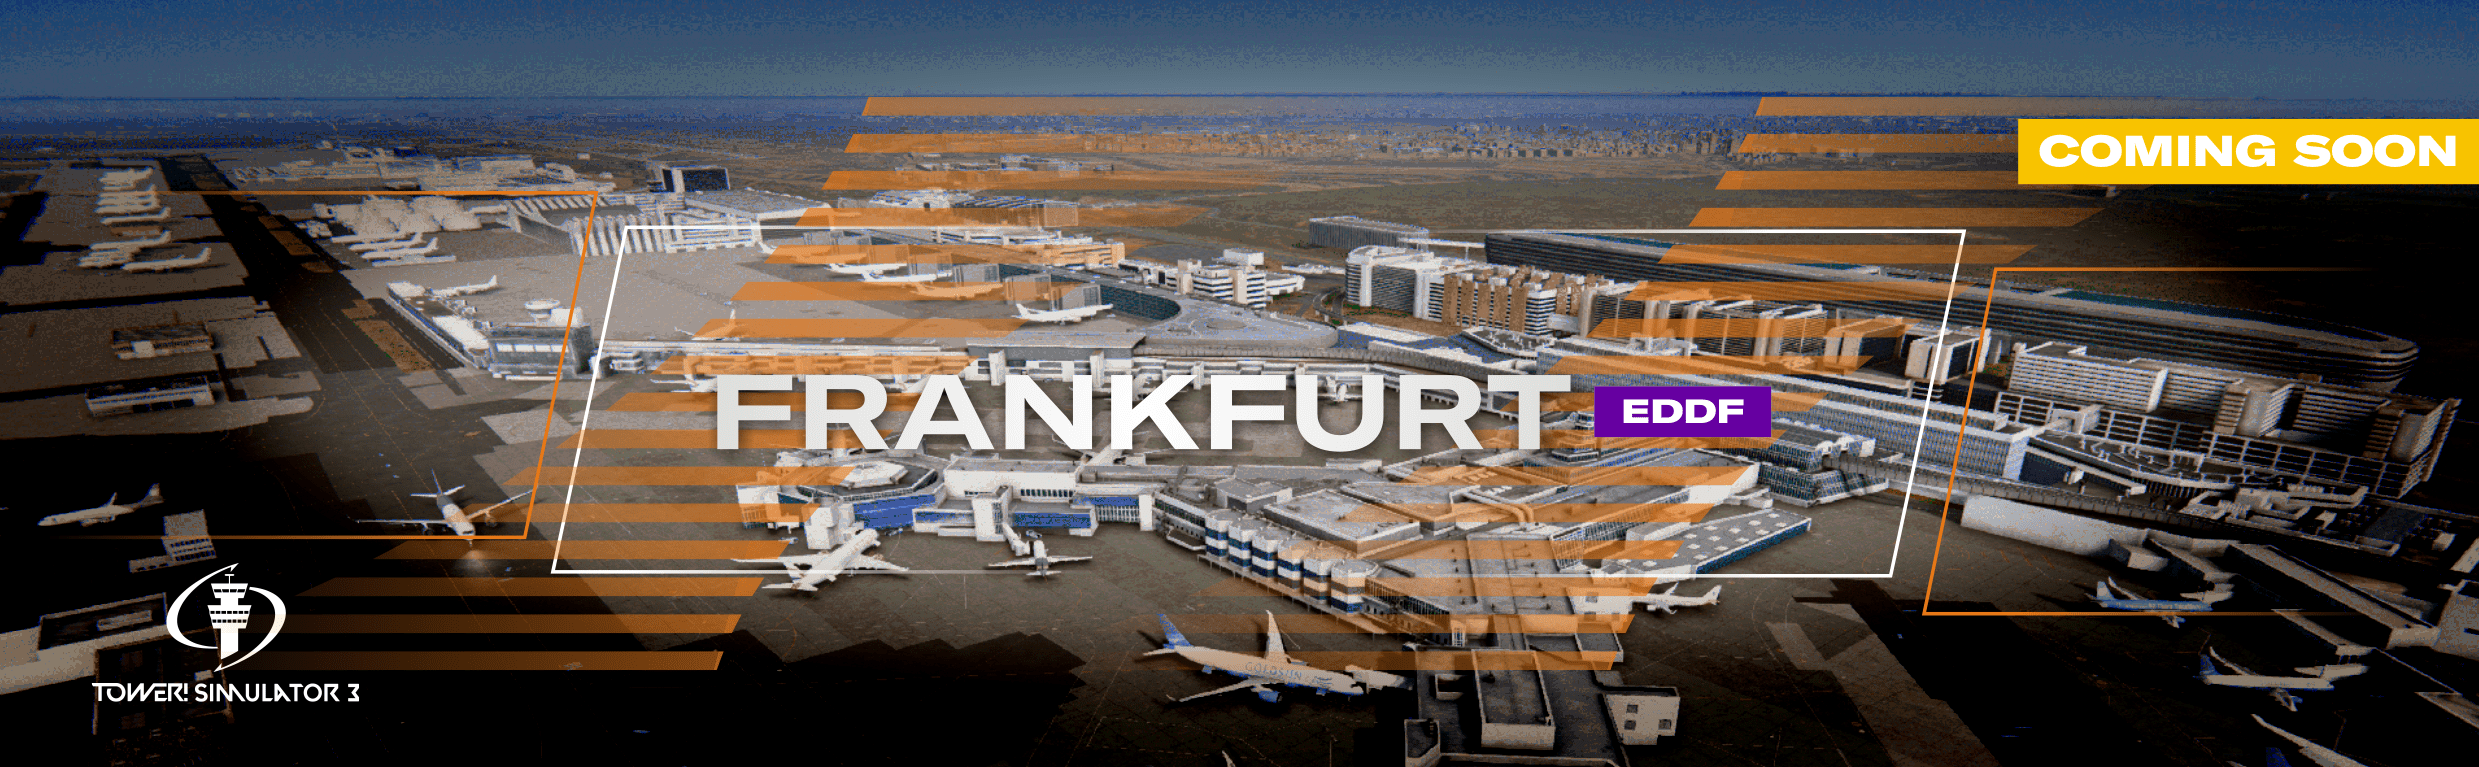 frankfurt airport atc game